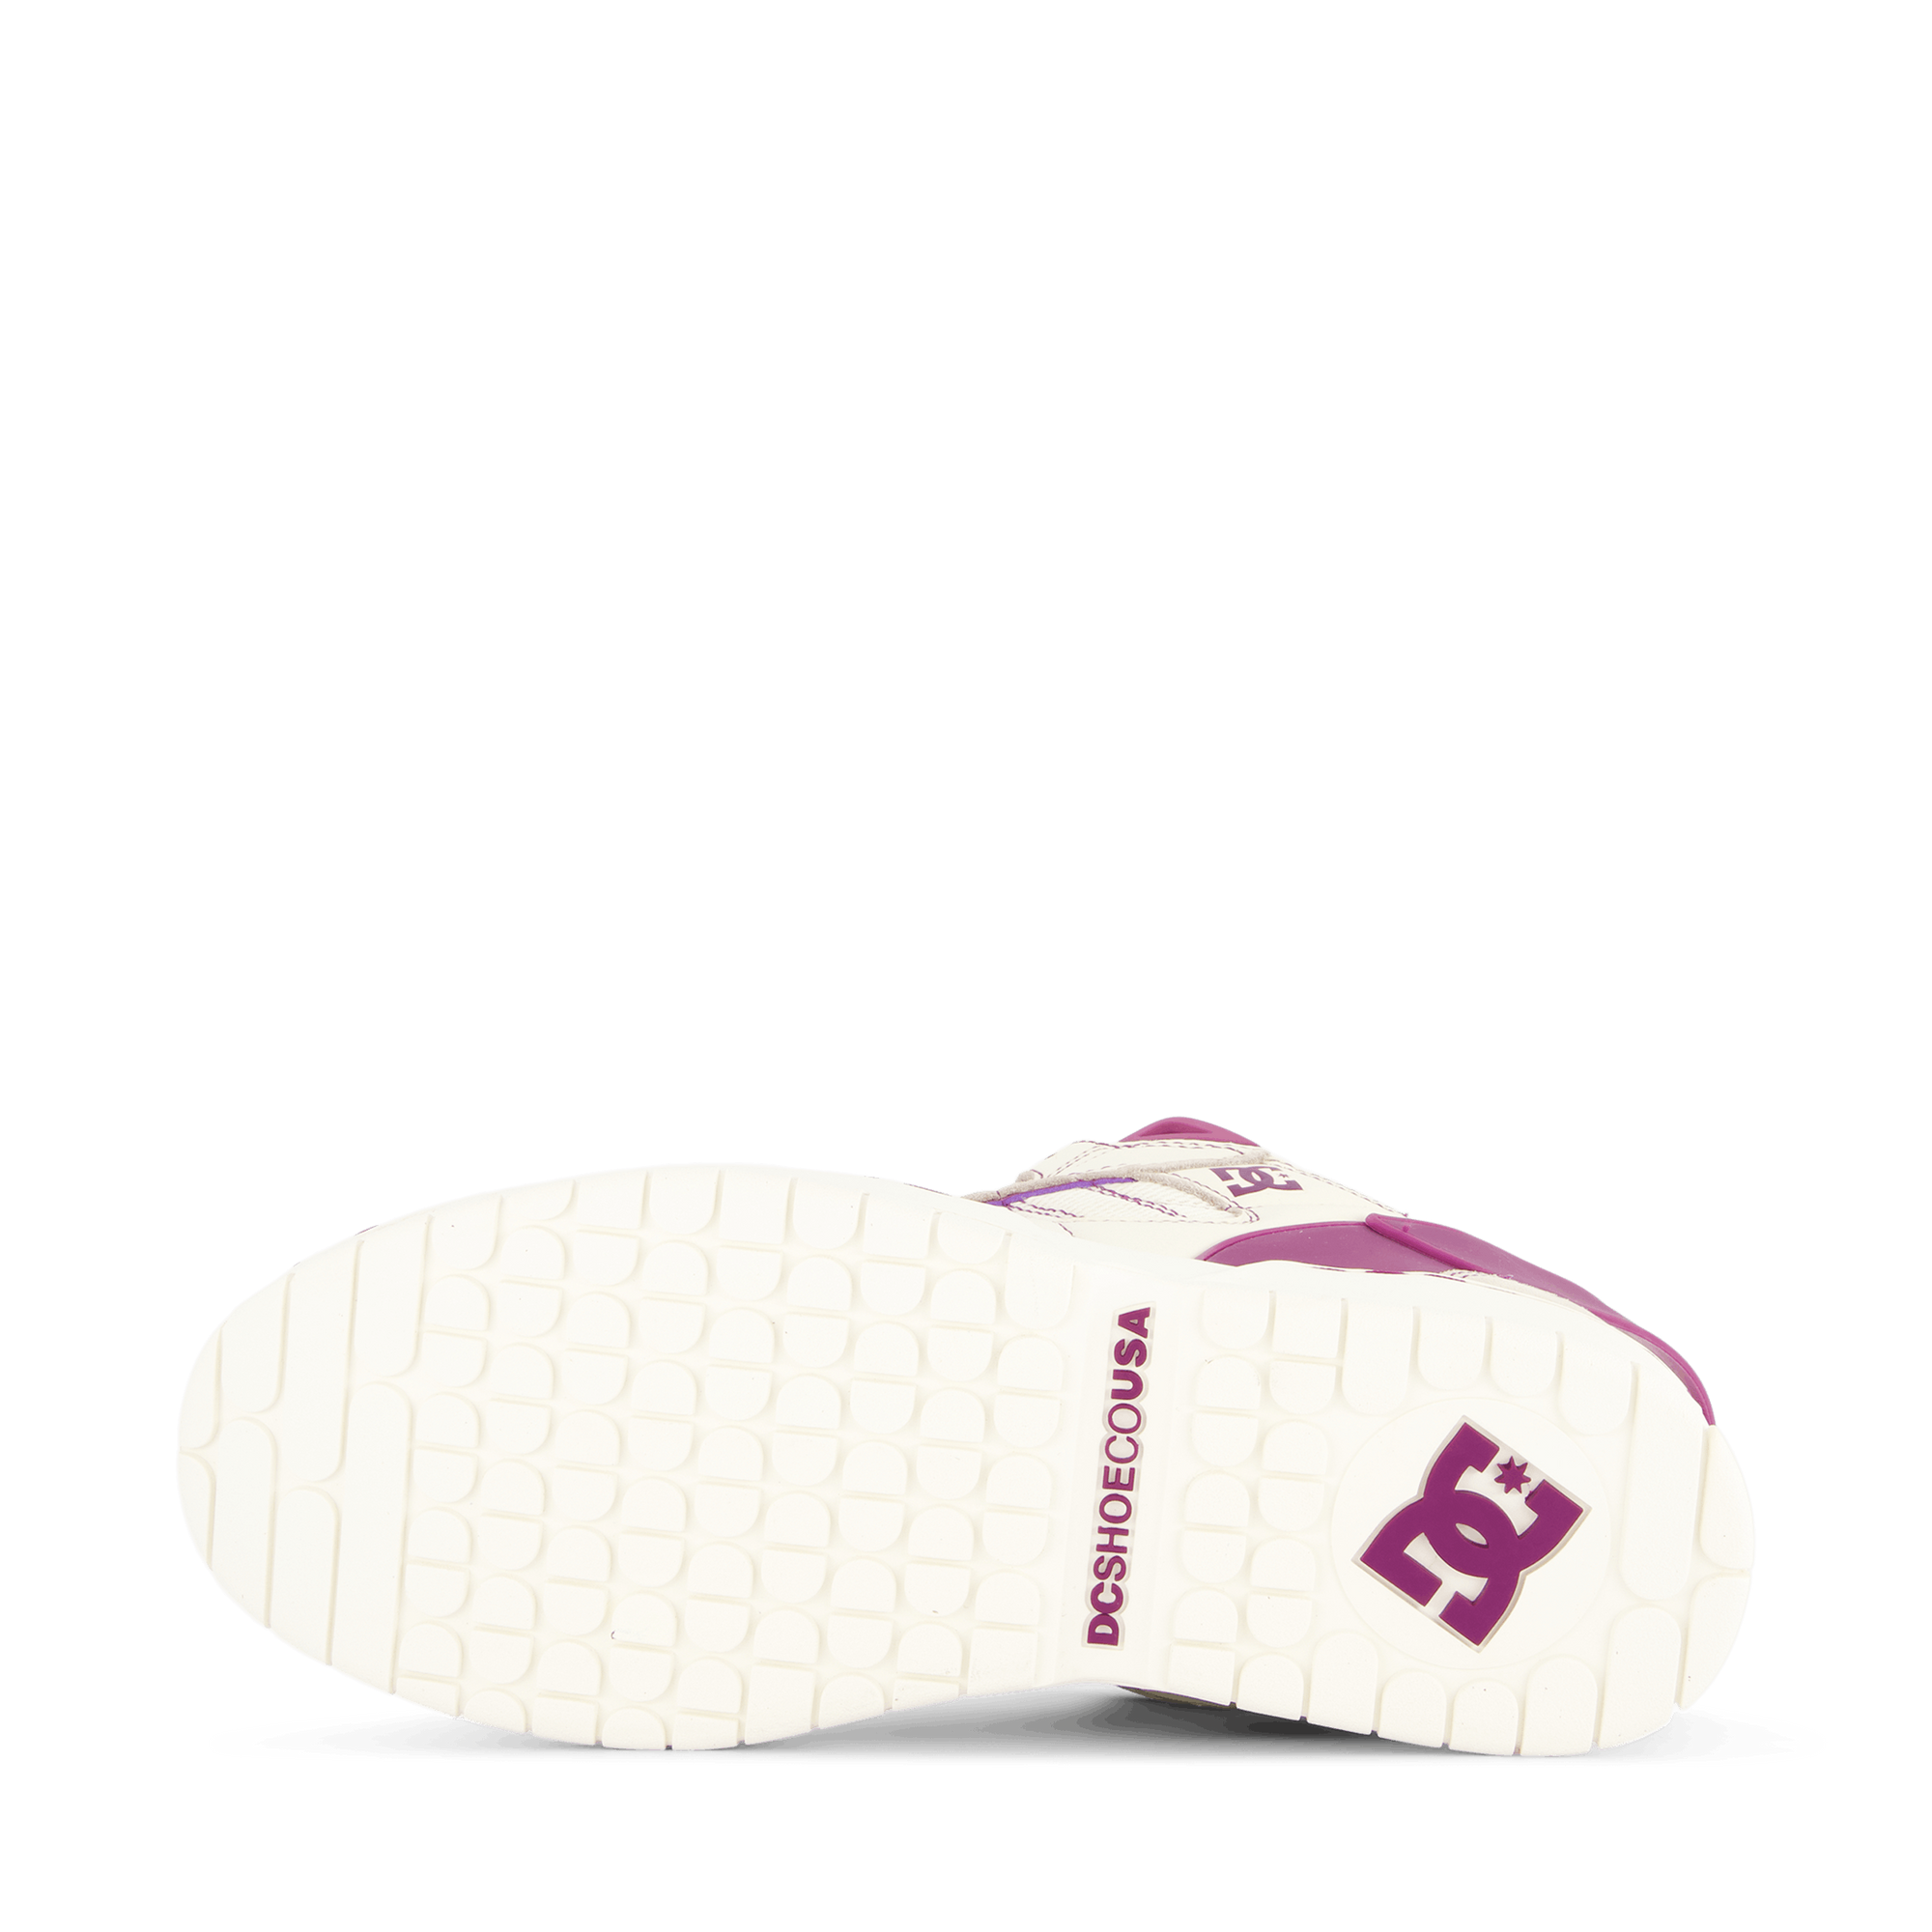 Needles X Dc Shoes Spectre Lea Off White / Purple